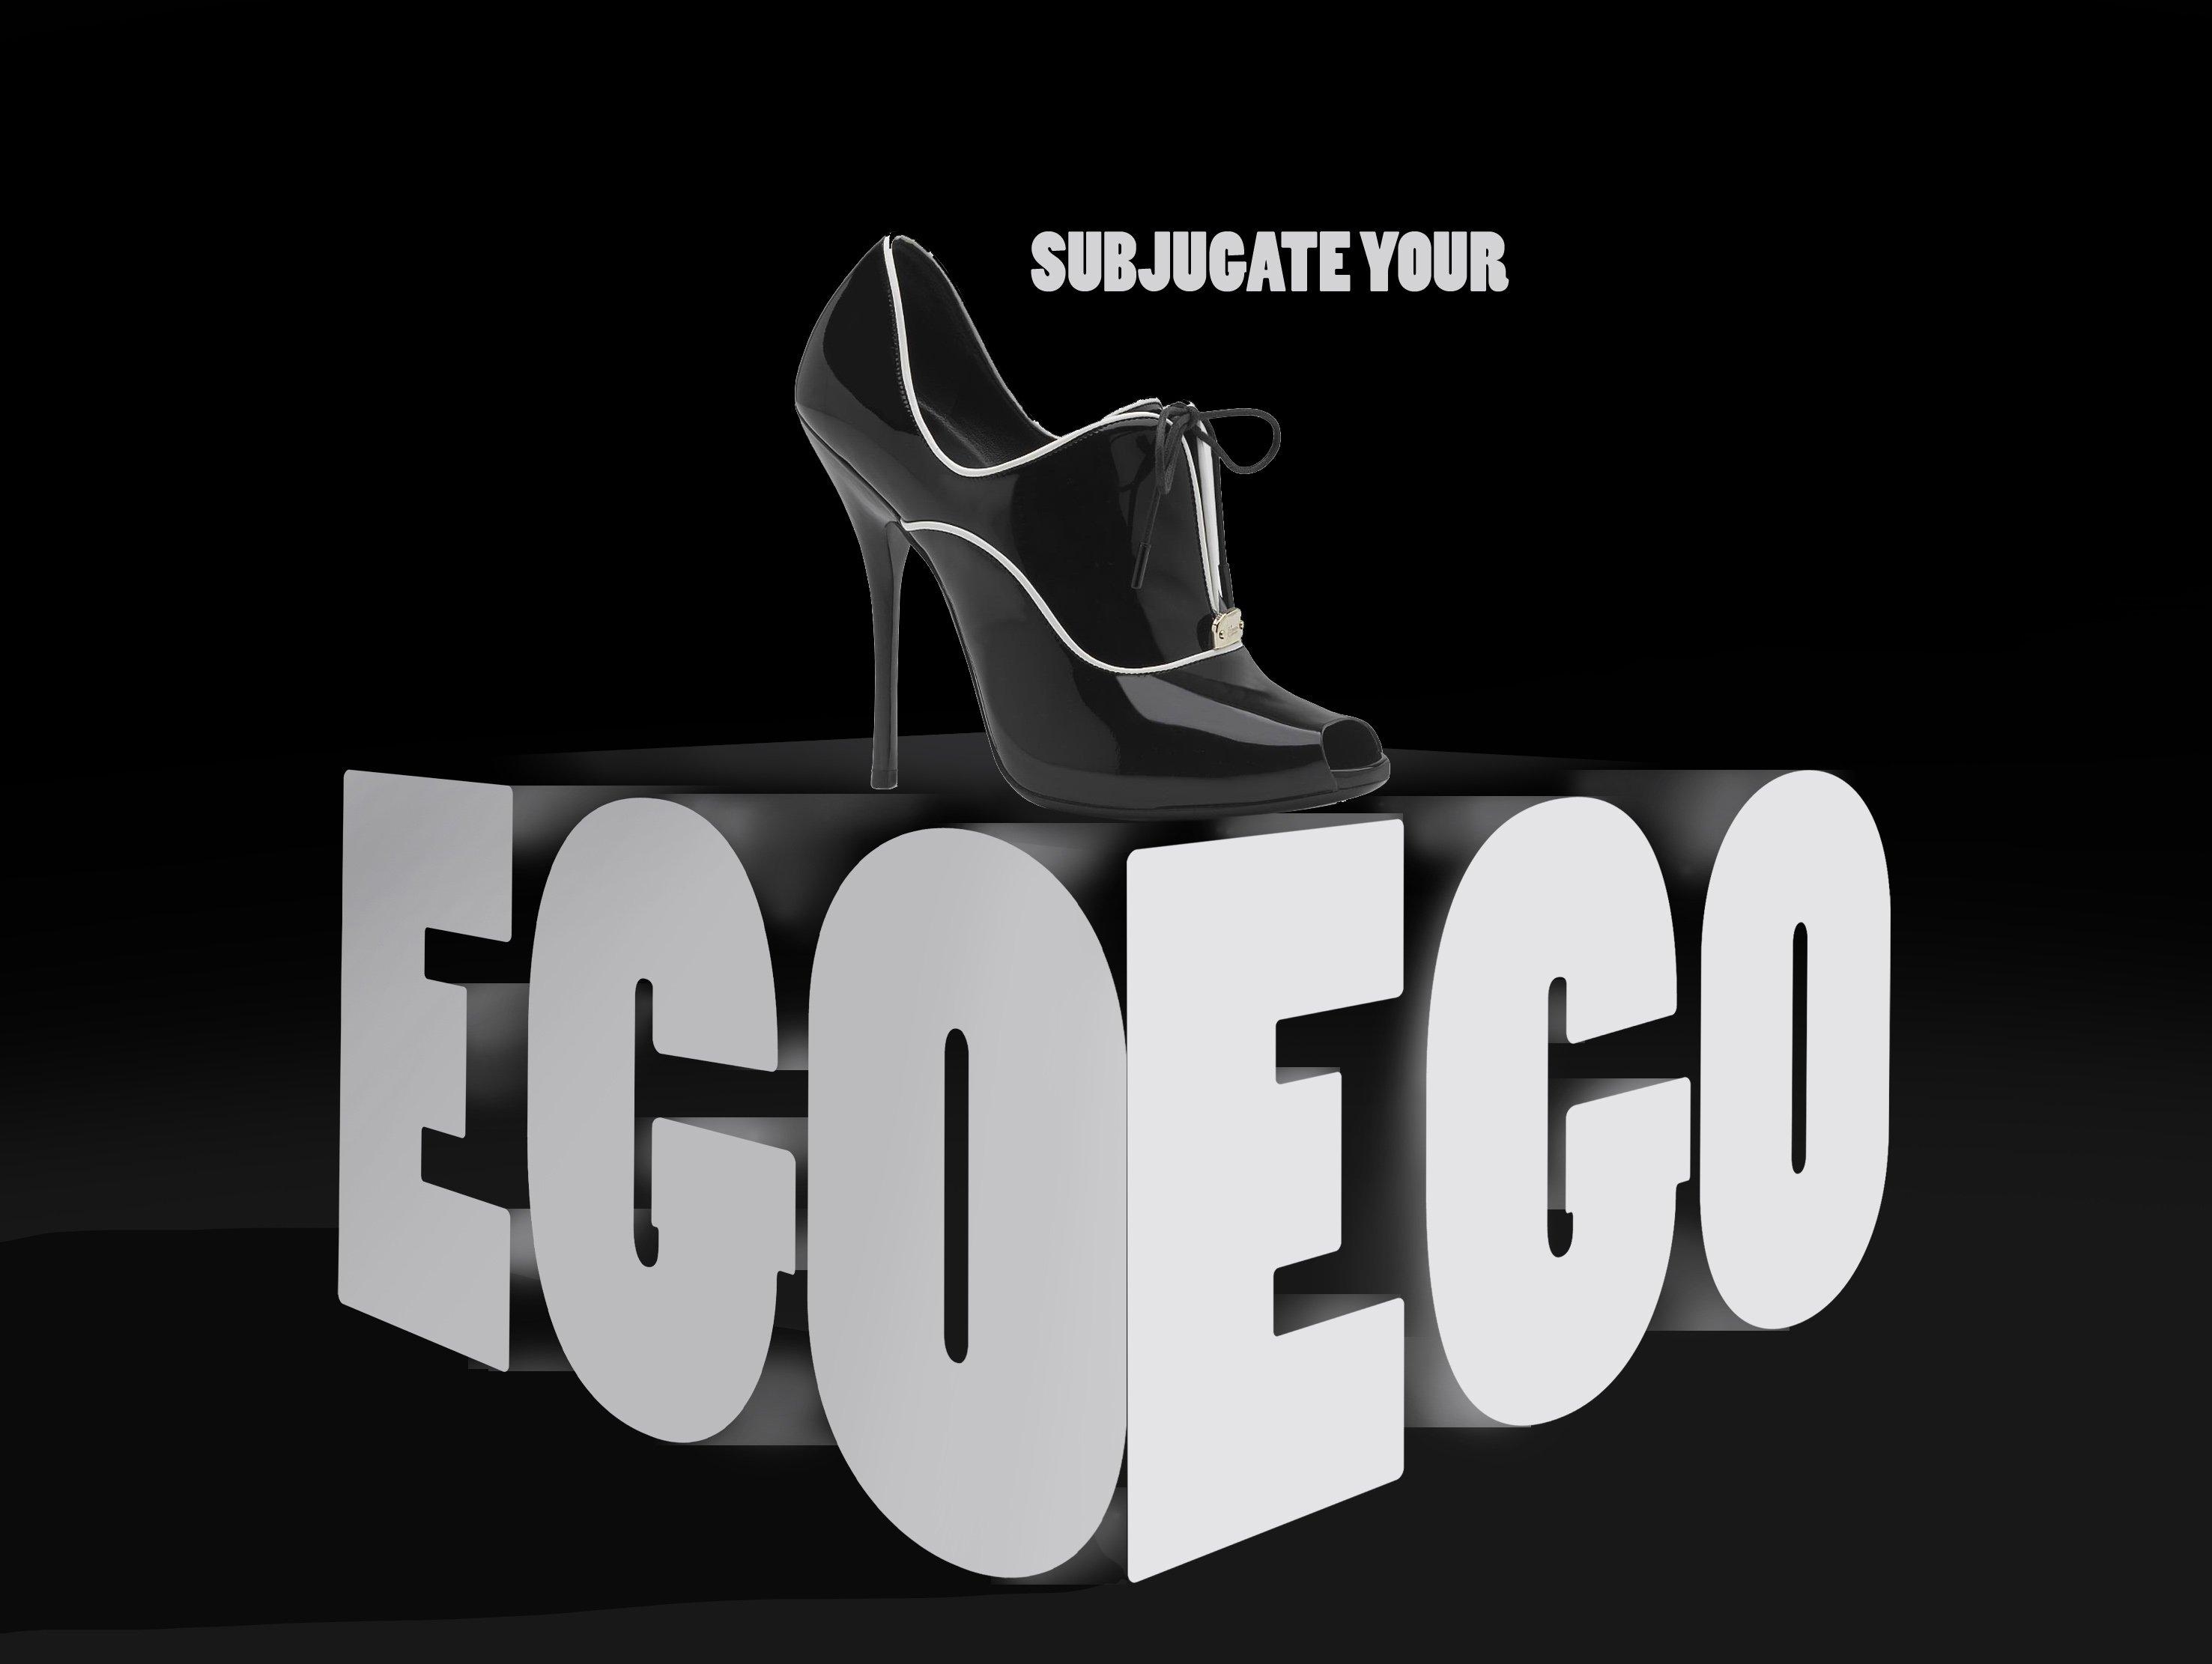 shoe, Fetish, Ego, Poster Wallpaper HD / Desktop and Mobile